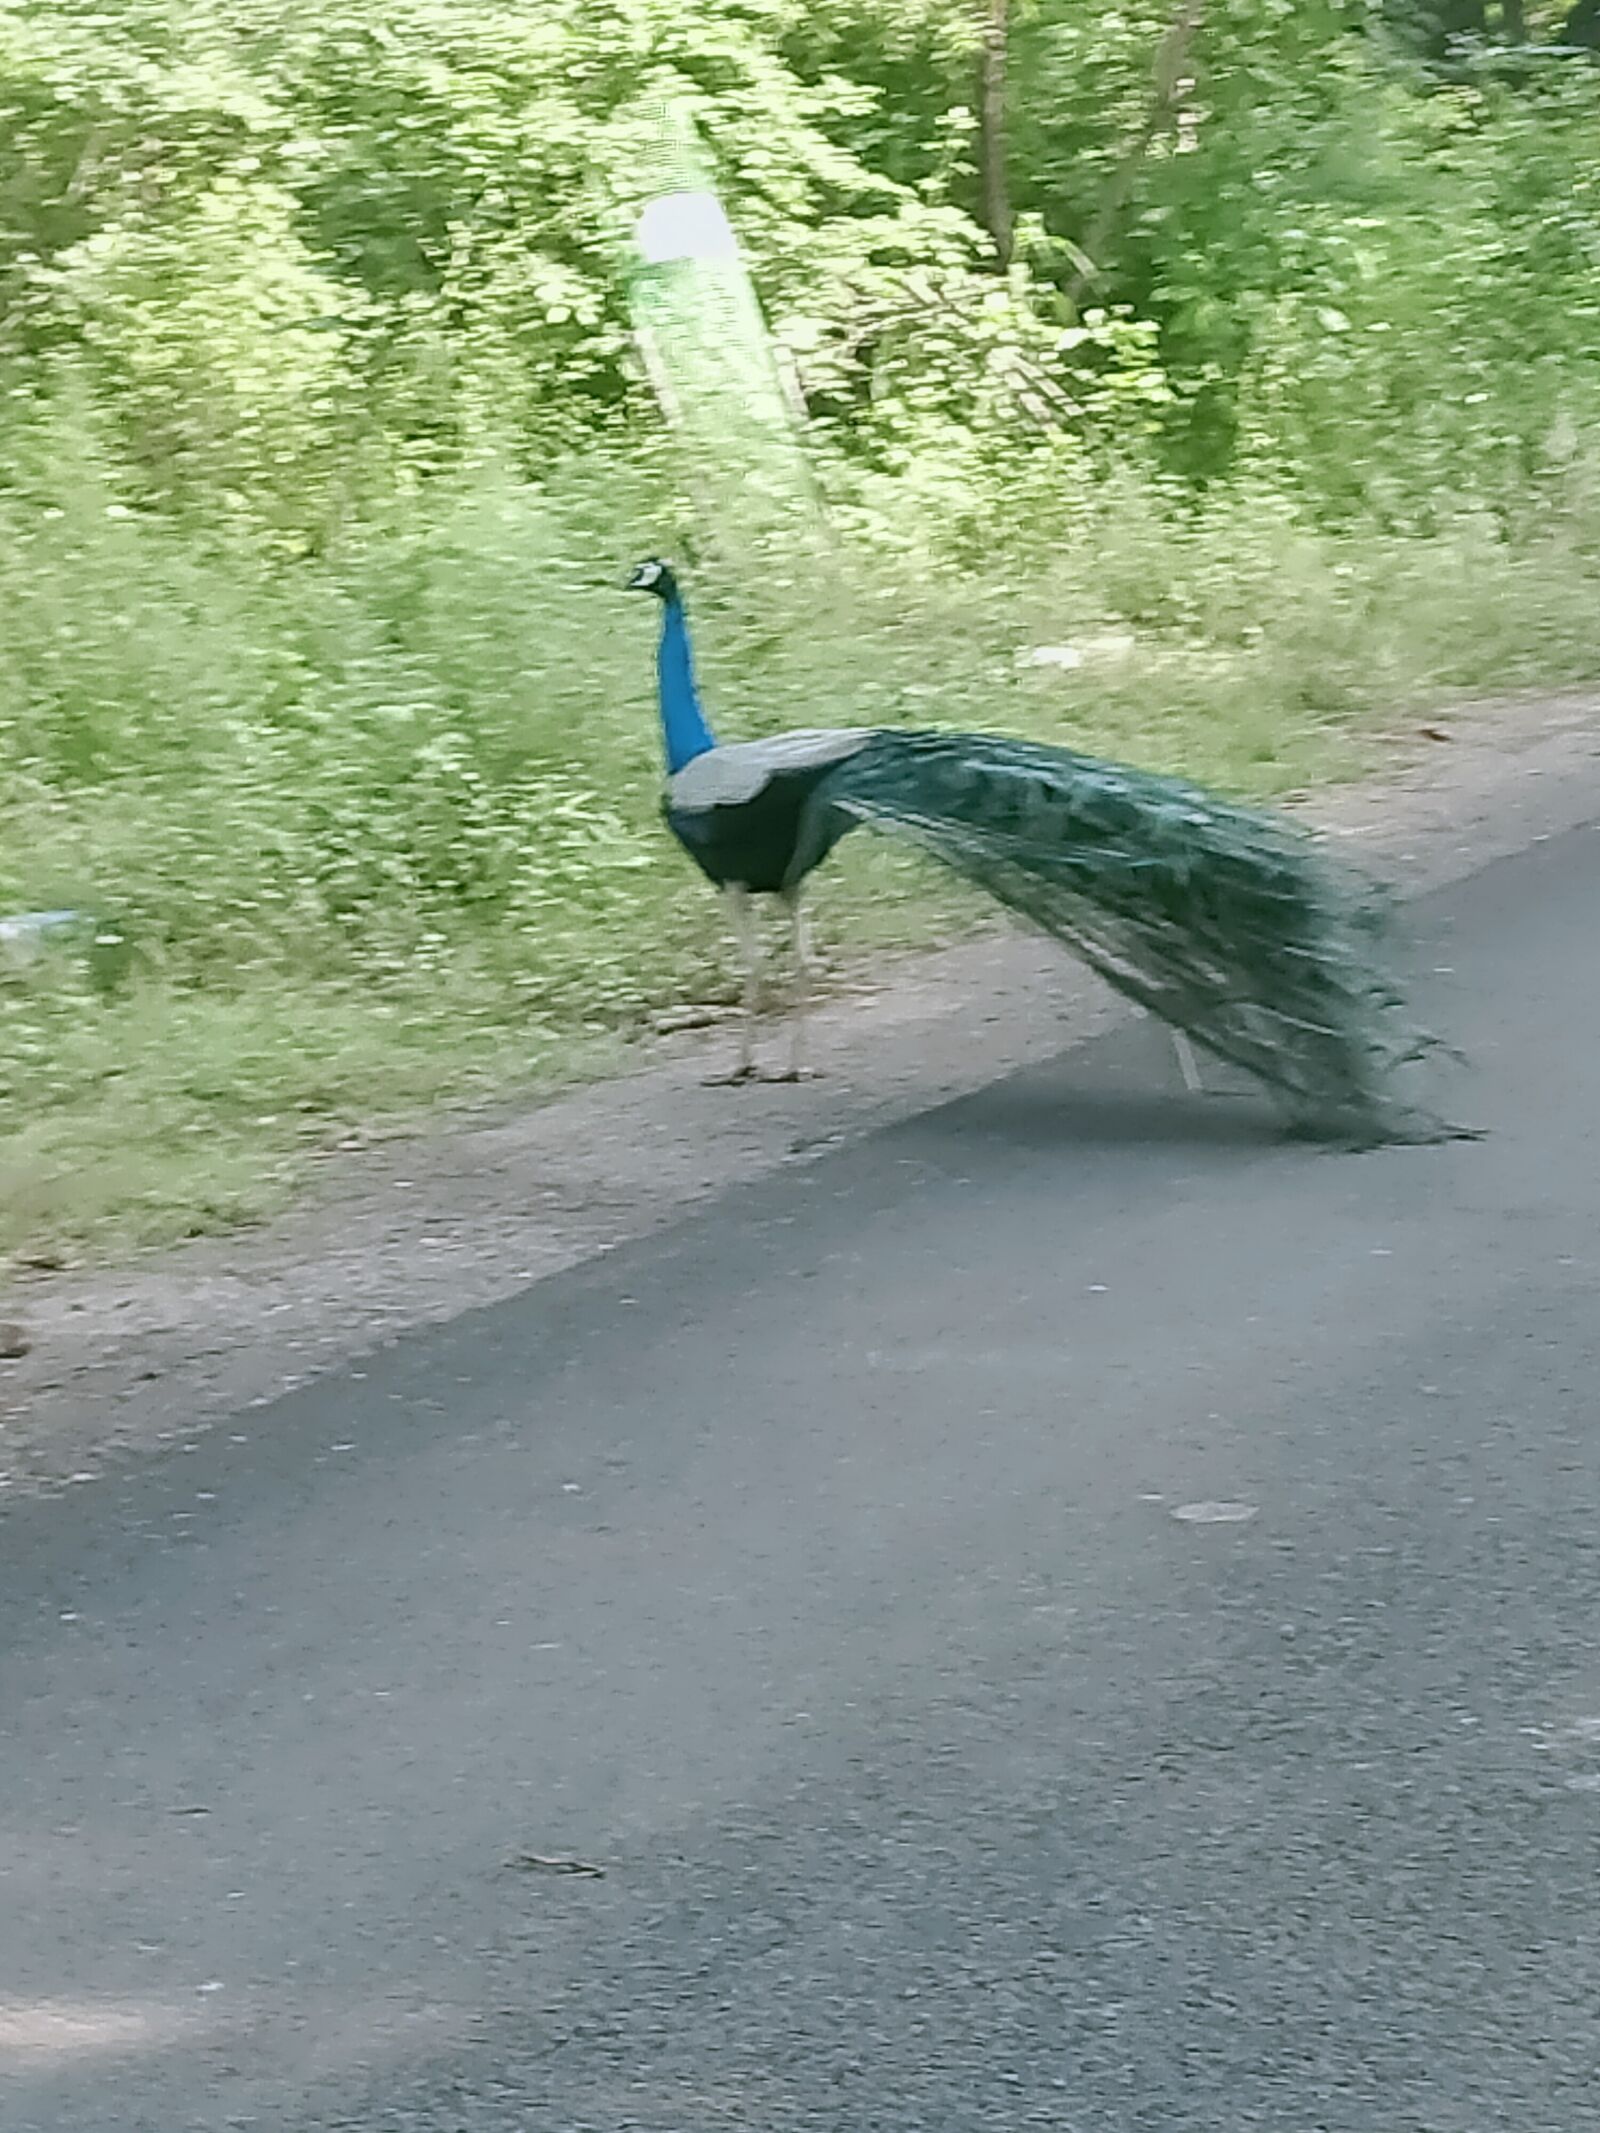 OPPO A5 2020 sample photo. Peacock, birds, jungle photography